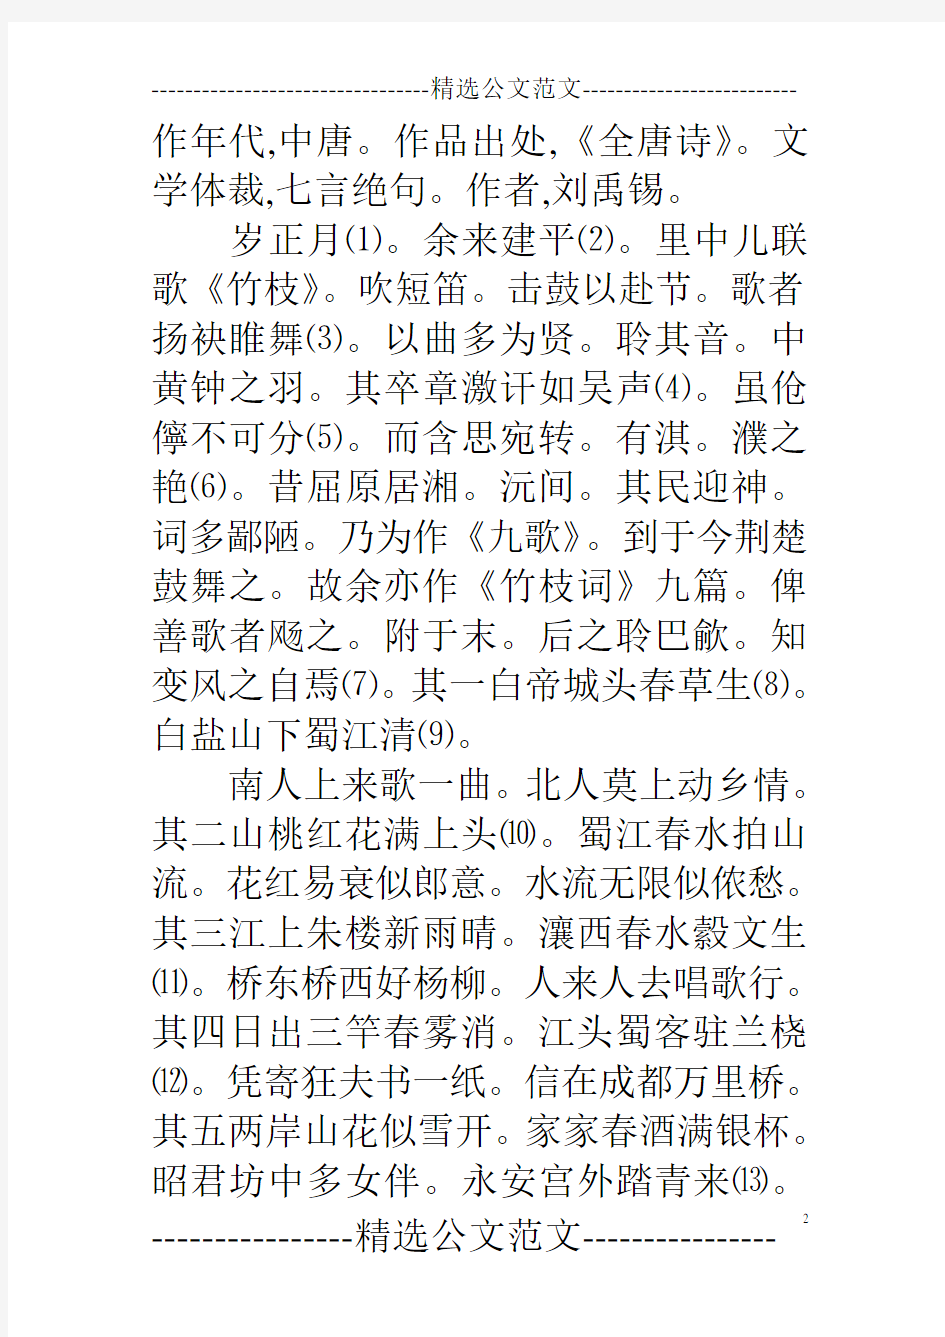 竹枝词 刘禹锡《竹枝词九首》是唐代文学家刘禹锡的组诗作品。竹